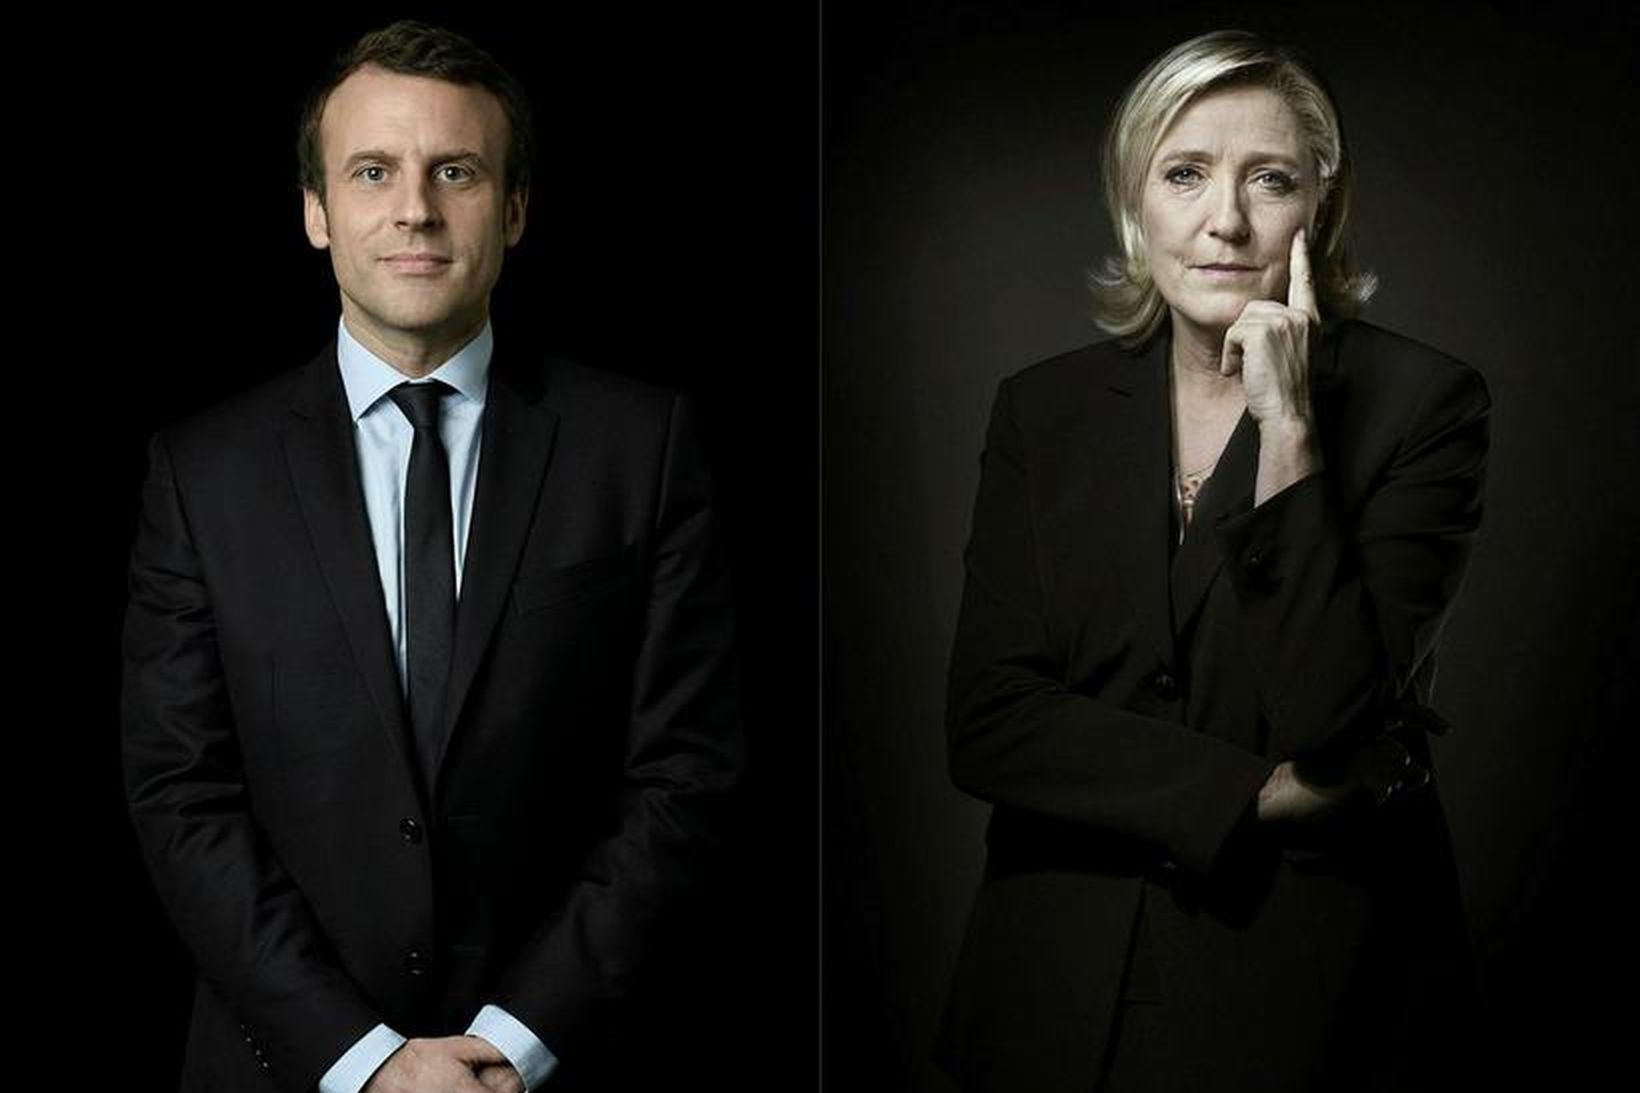 Samsett mynd sem sýnir þau Emmanuel Macron Marine Le Pen …